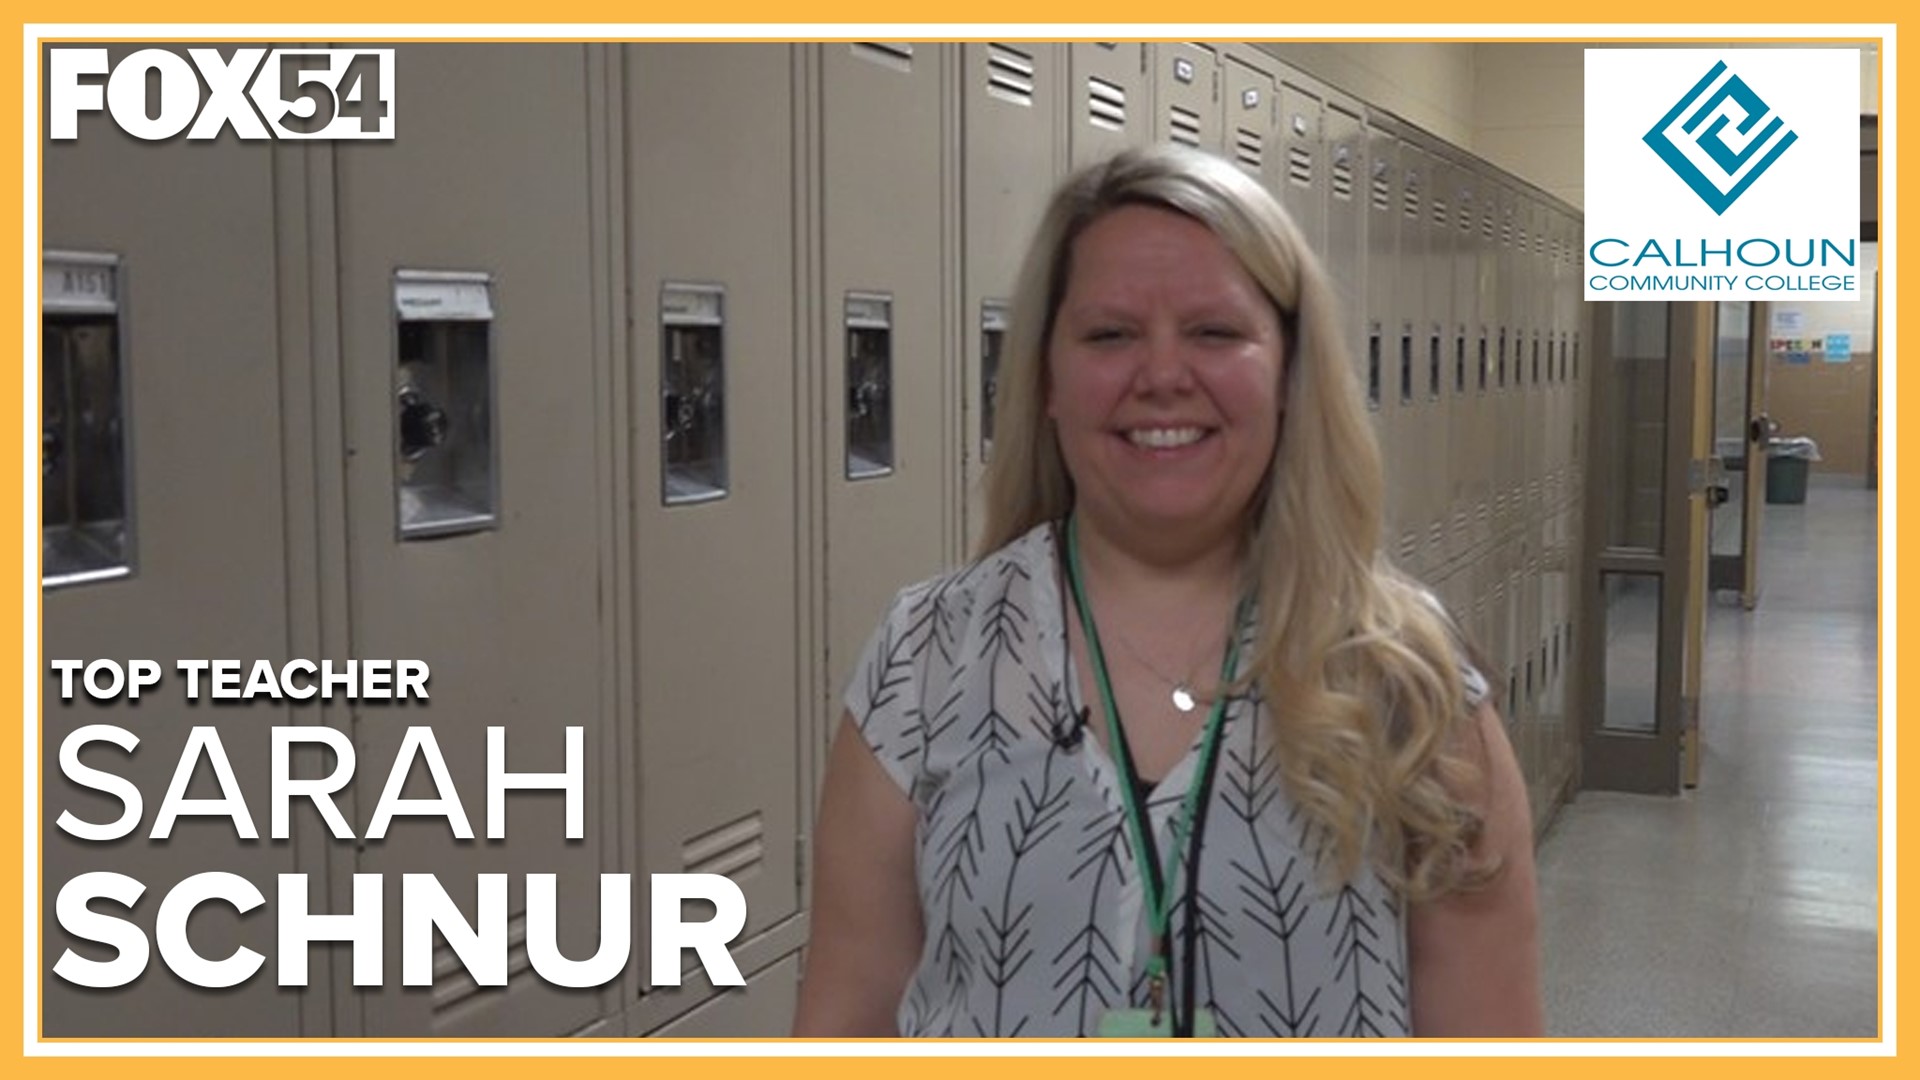 Sarah Schnur teaches at Challenger Middle School.